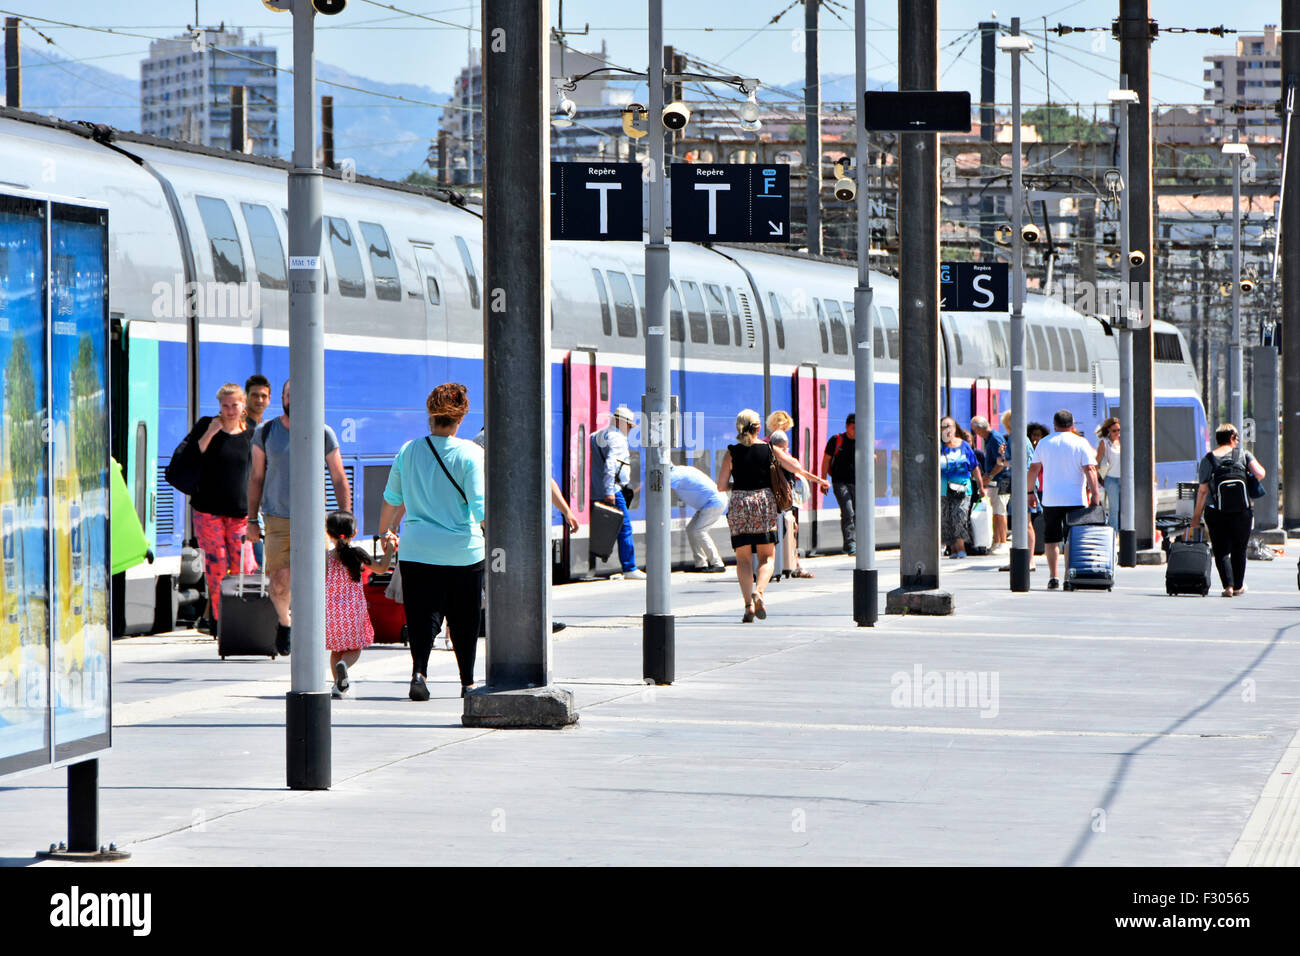 Il francese SNCF TGV ad alta velocità treno passeggeri a Marseille Saint Charles Francia treno stazione ferroviaria con i viaggiatori su piattaforma con i bagagli il giorno di sole Foto Stock